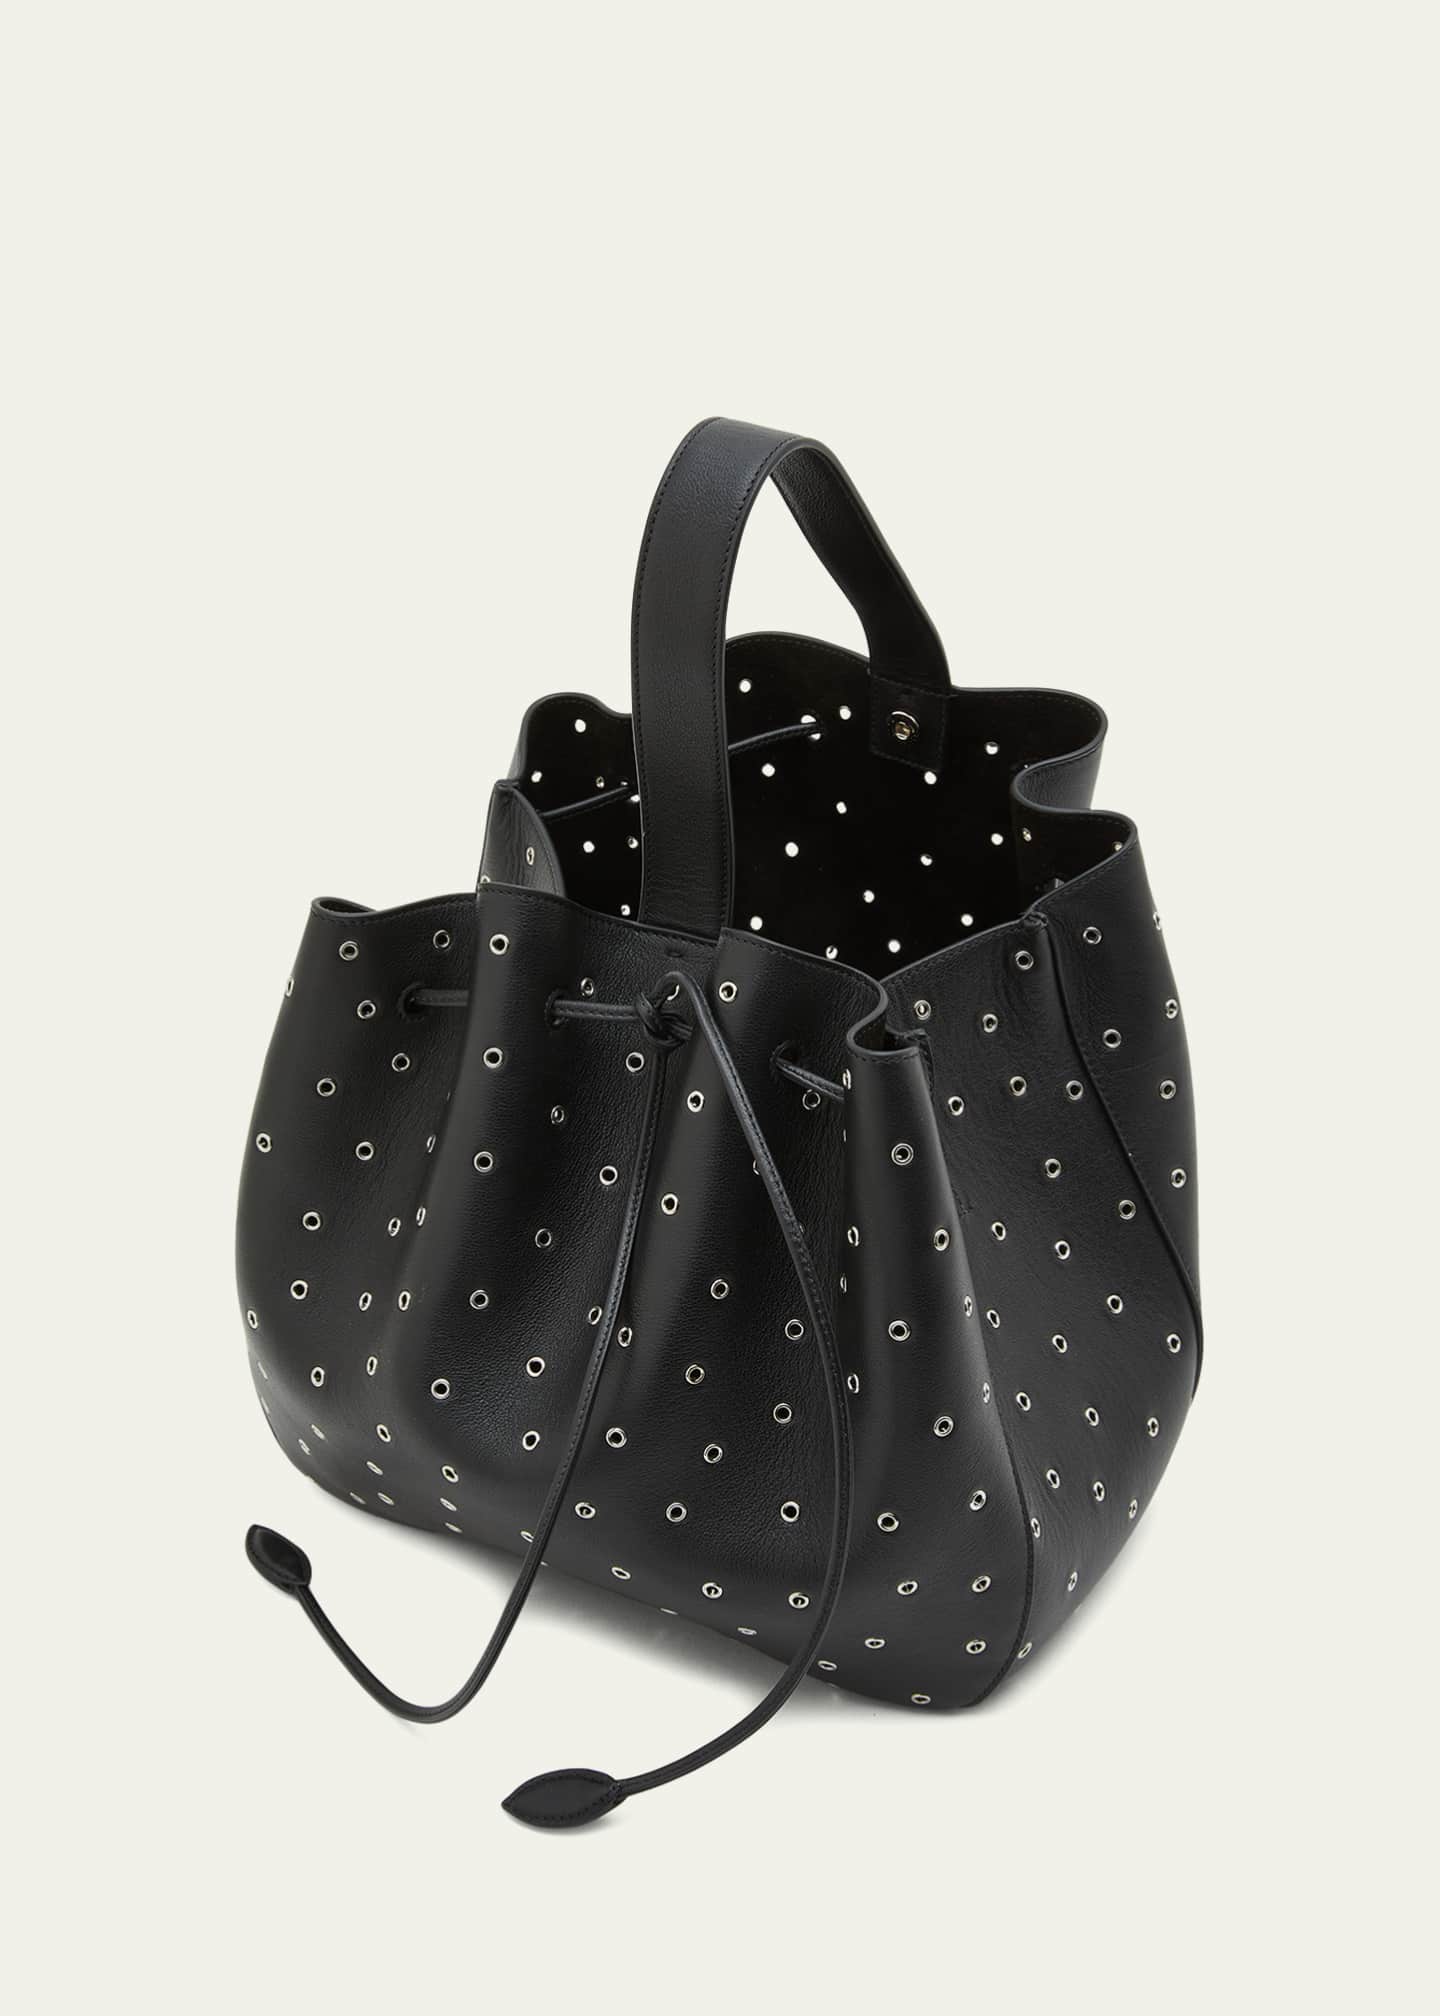 Studded Leather Handbag, Polka Dot Studded Leather Tote Bag, Polka Dot Leather Shoulder Bag.